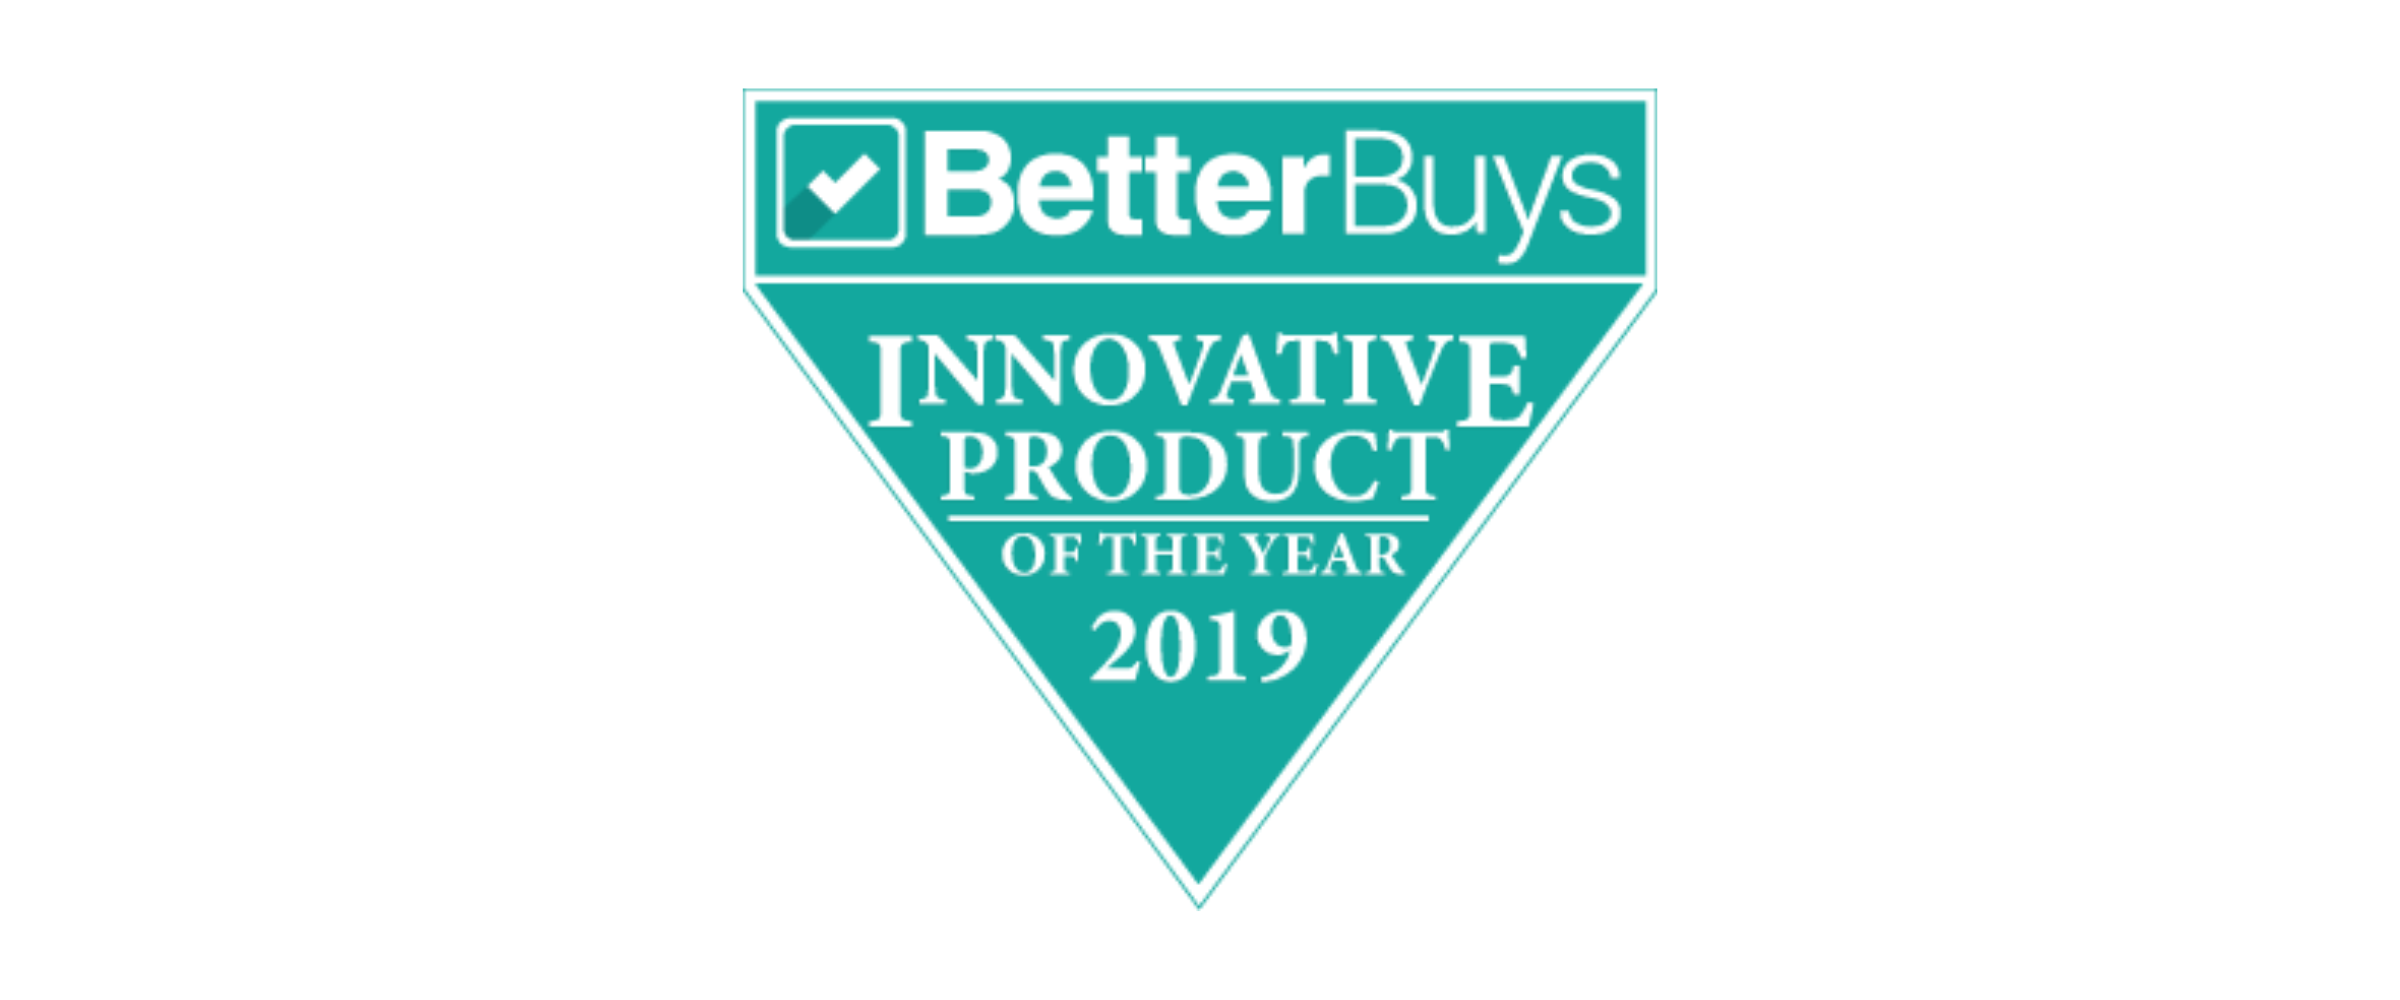 Toshiba Better Buys Innovative Product 2019 Award Logo